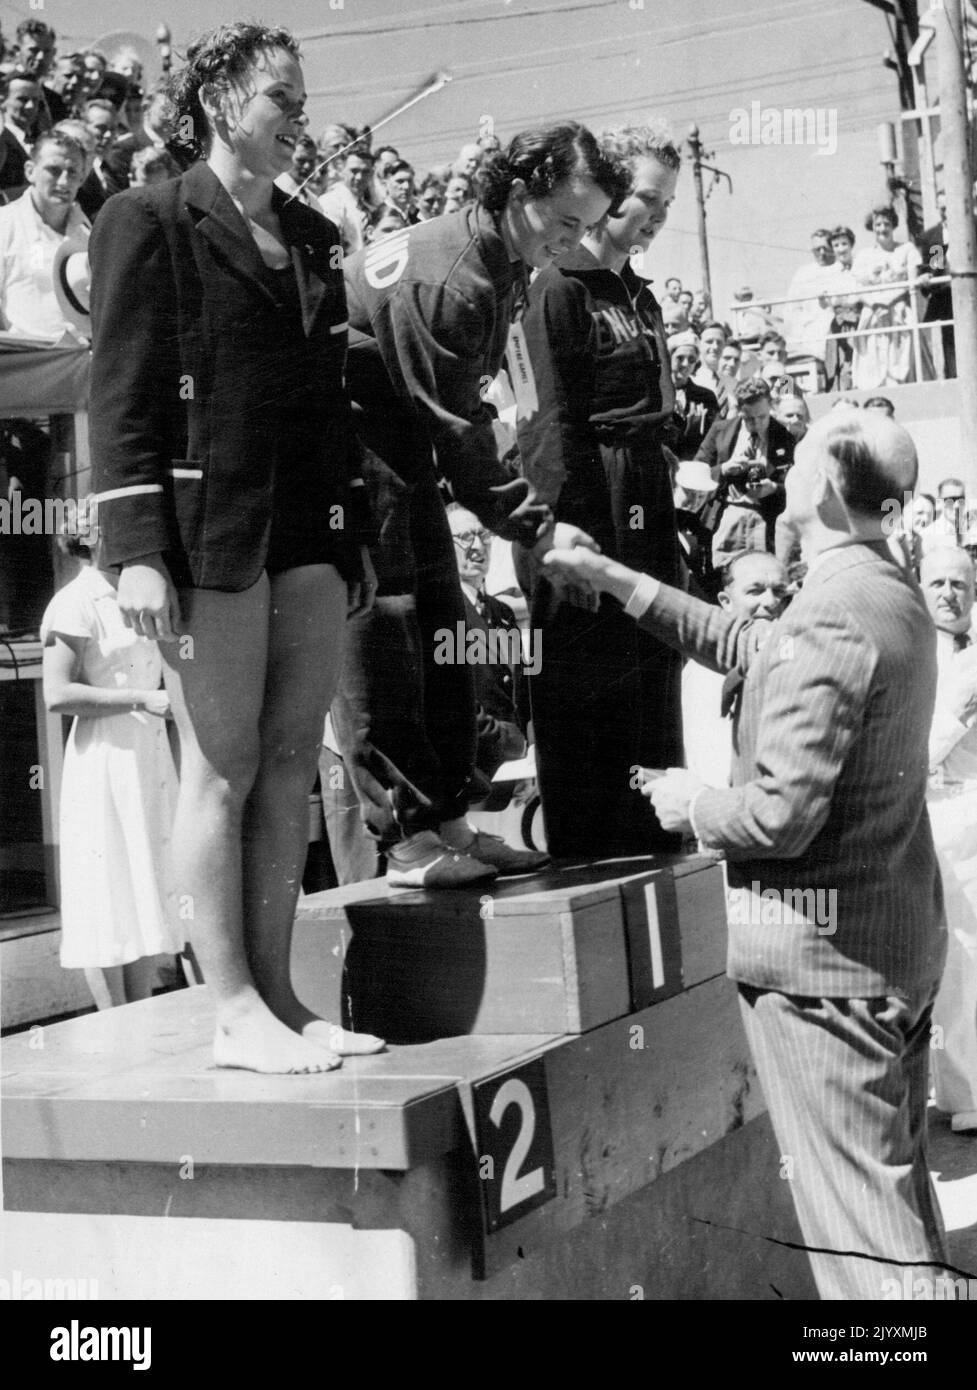 H. O. Gordon (Schottland), Gewinner des Frauenpanzerfinales von 220yds, B. N. Lyons (Australien), Second und E. Church (England), Dritter, wurde von A. E. Porritt, Vorsitzender des britischen Empire Games Federation, gratuliert. 16. Februar 1950. Stockfoto